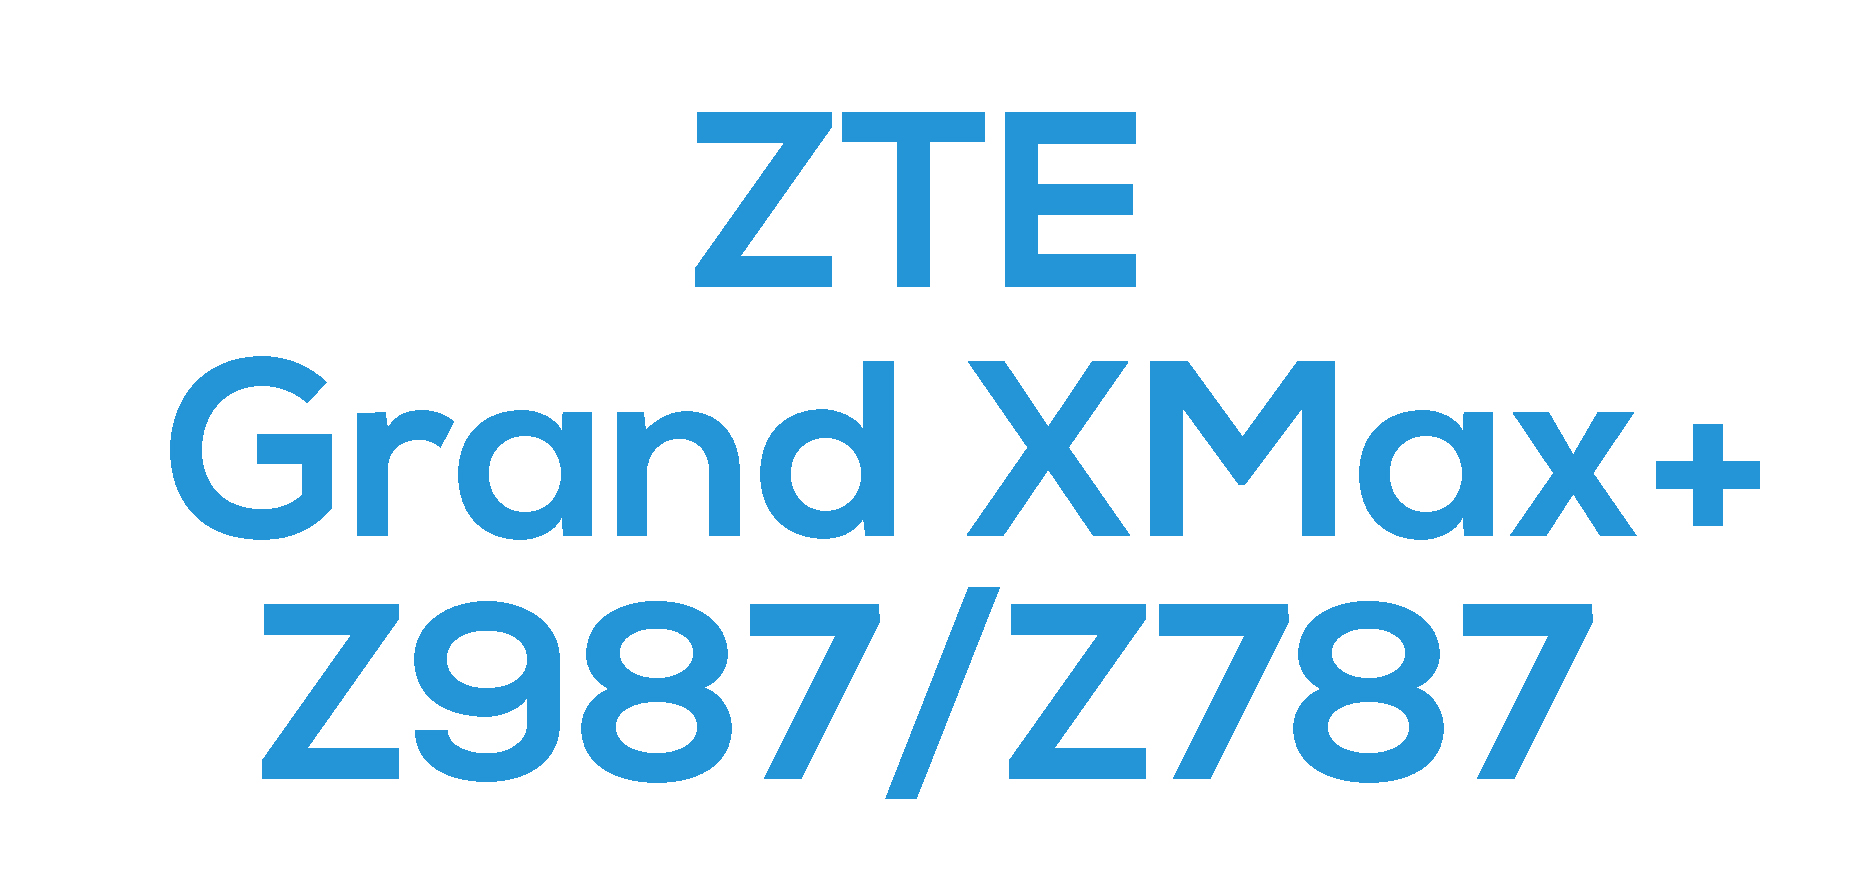 ZTE Grand X Max+ (Z987 / Z787)